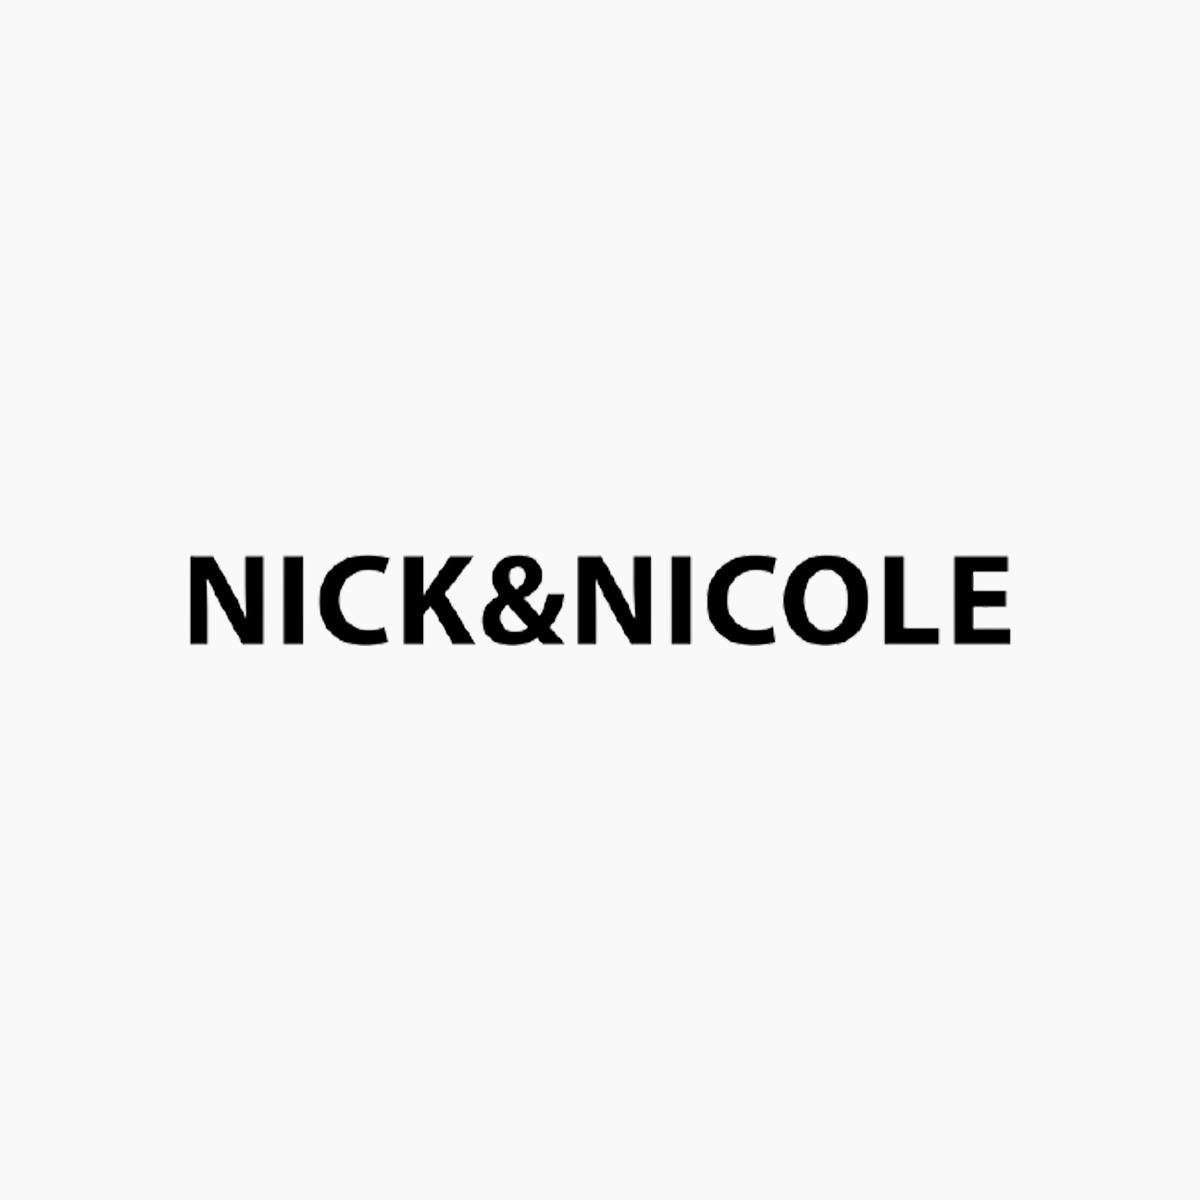 NICK&NICOLE